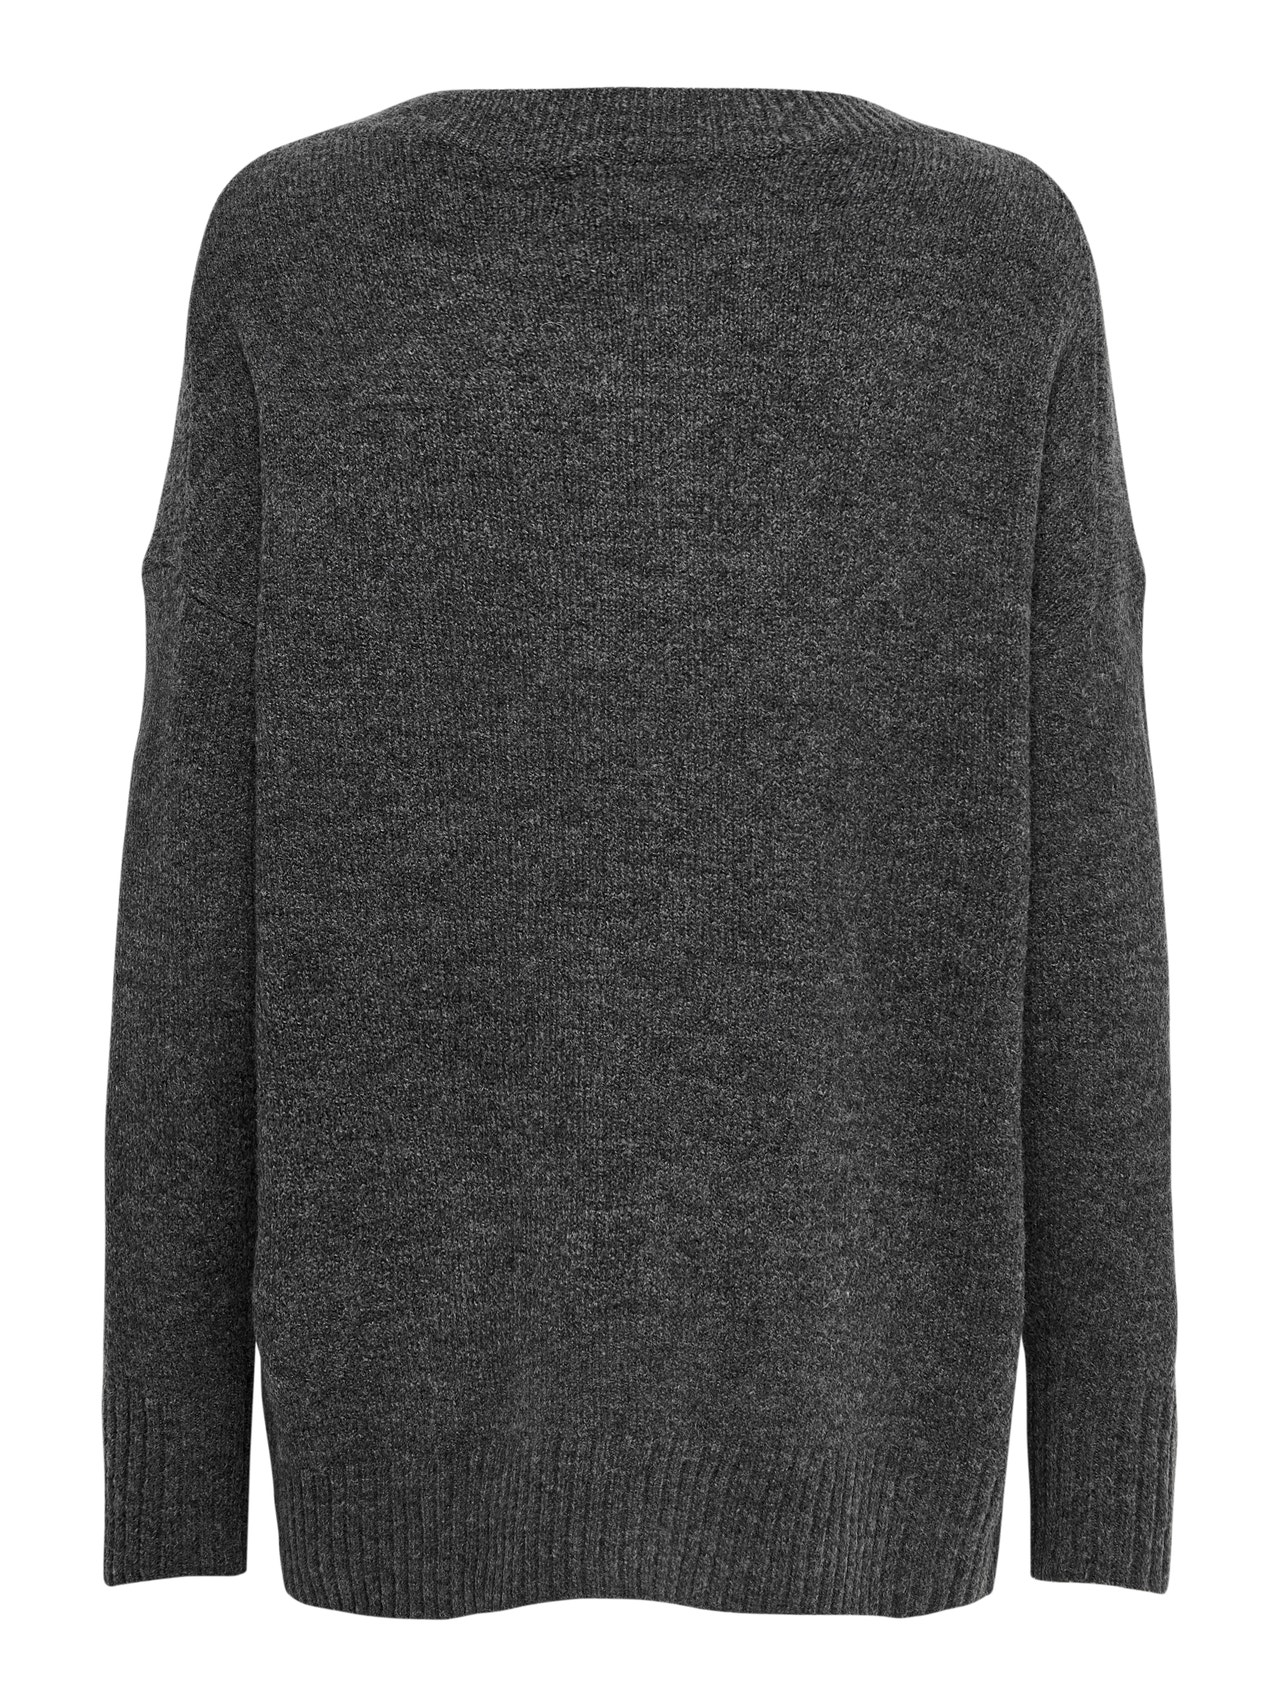 ONLY O-neck knitted pullover -Dark Grey Melange - 15173800